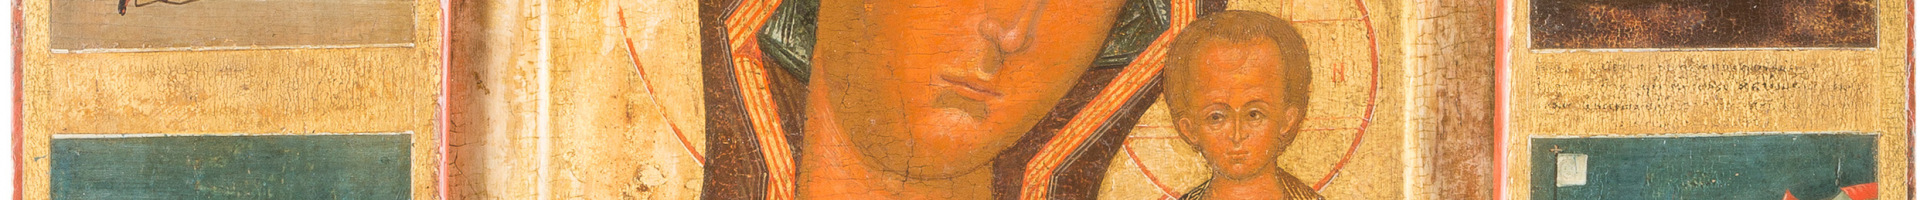 Ikona Kazanska Matka Bozia s klejmami